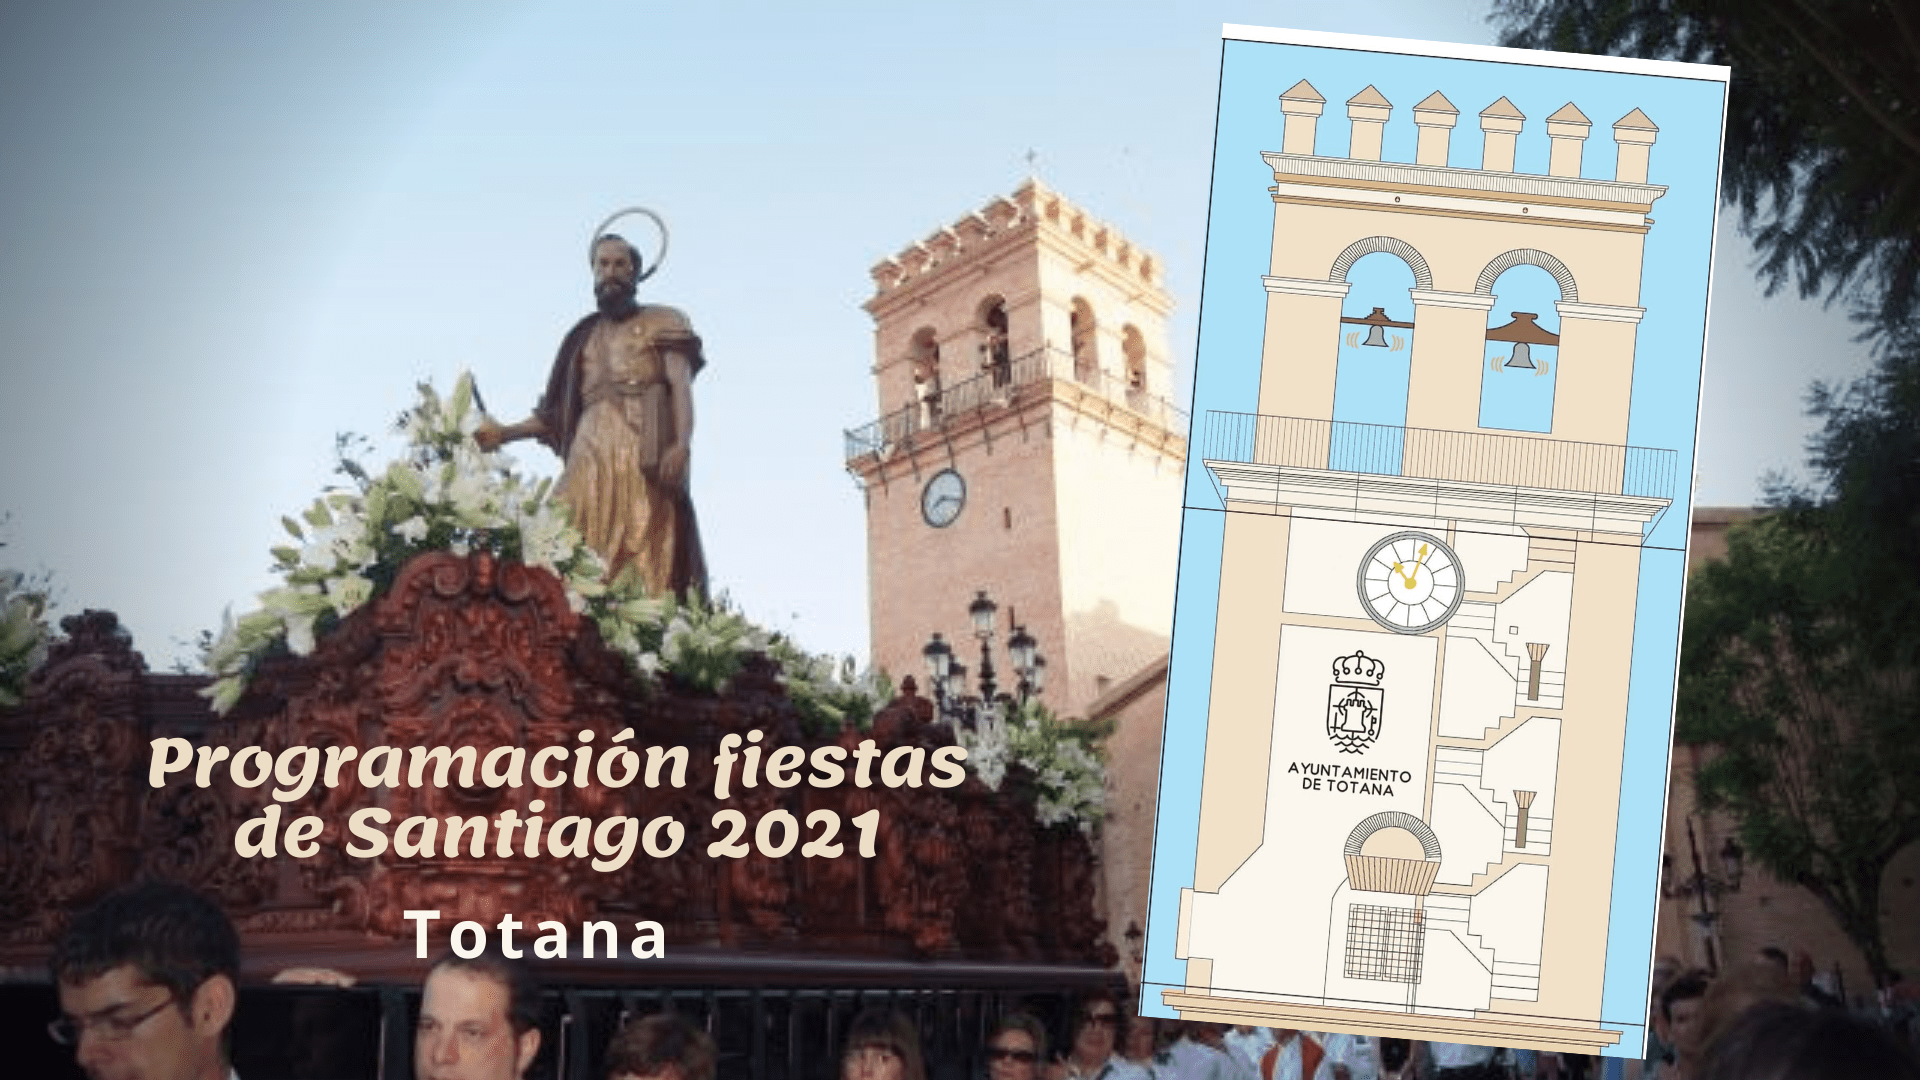 Toda la programación de fiestas de Santiago de Totana 2021 aquí